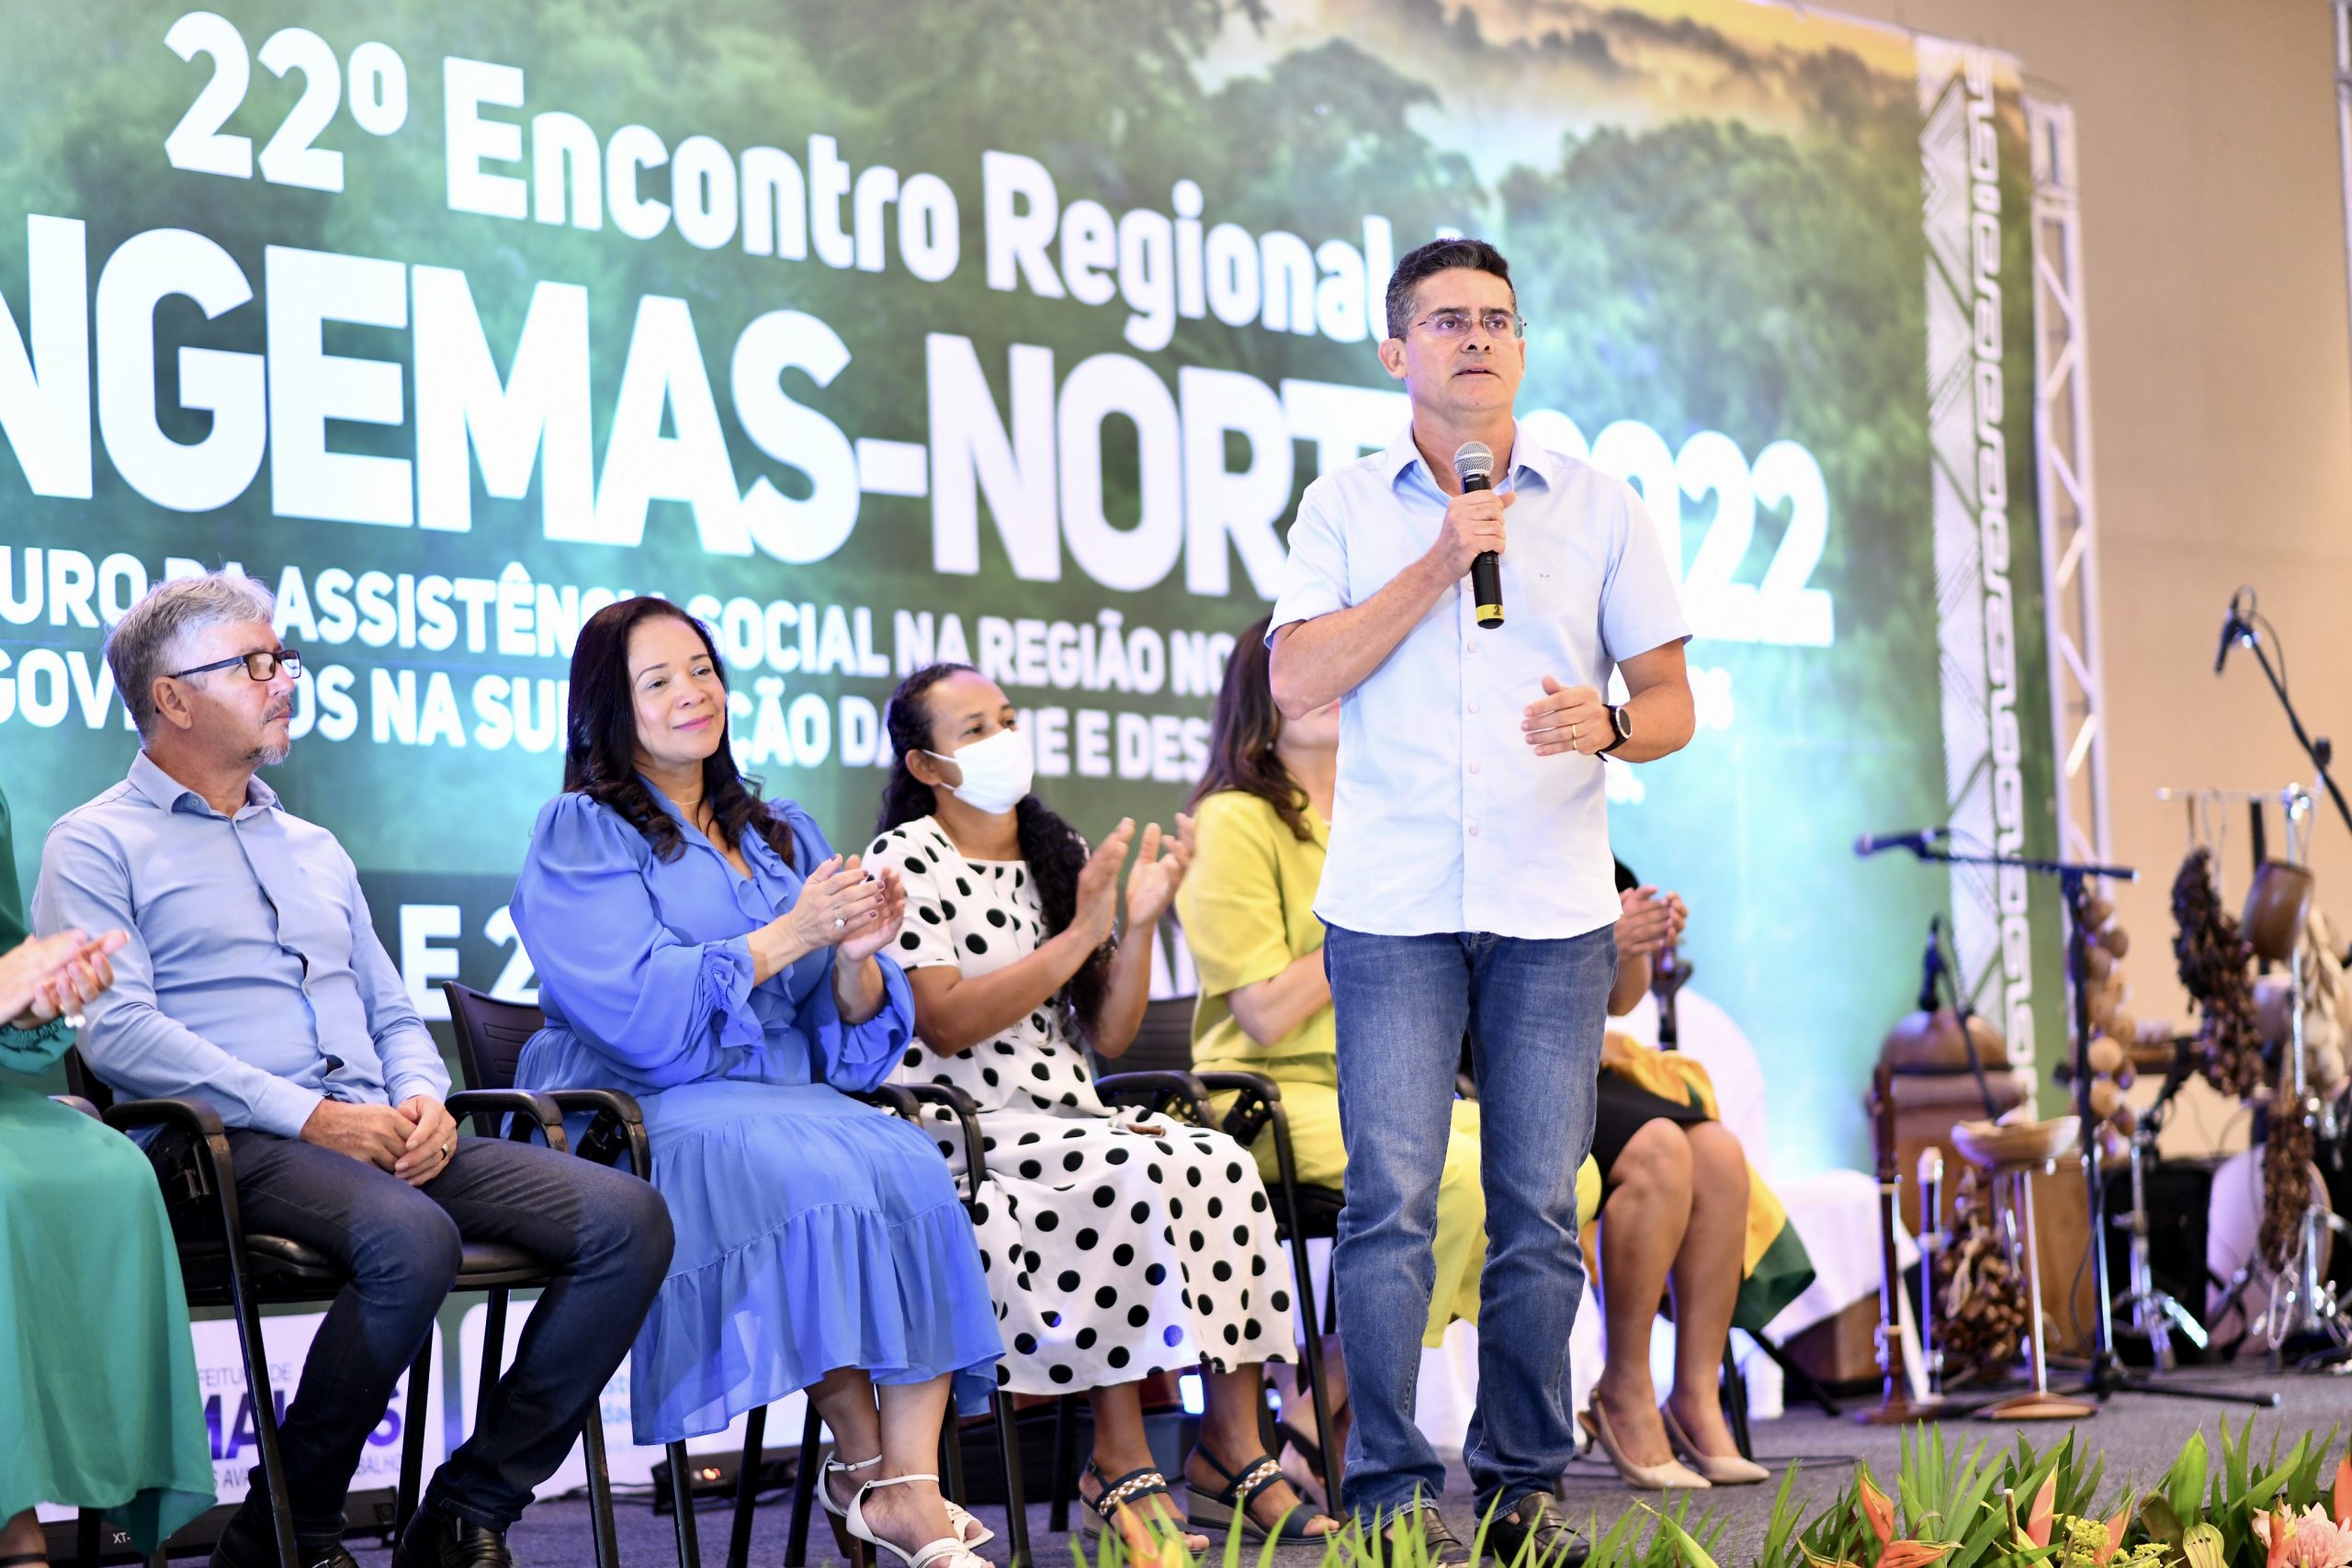 David Almeida destaca reforma dos Cras e busca pela excelência nos serviços da Semasc durante abertura do 22º Encontro Regional do Congemas-Norte